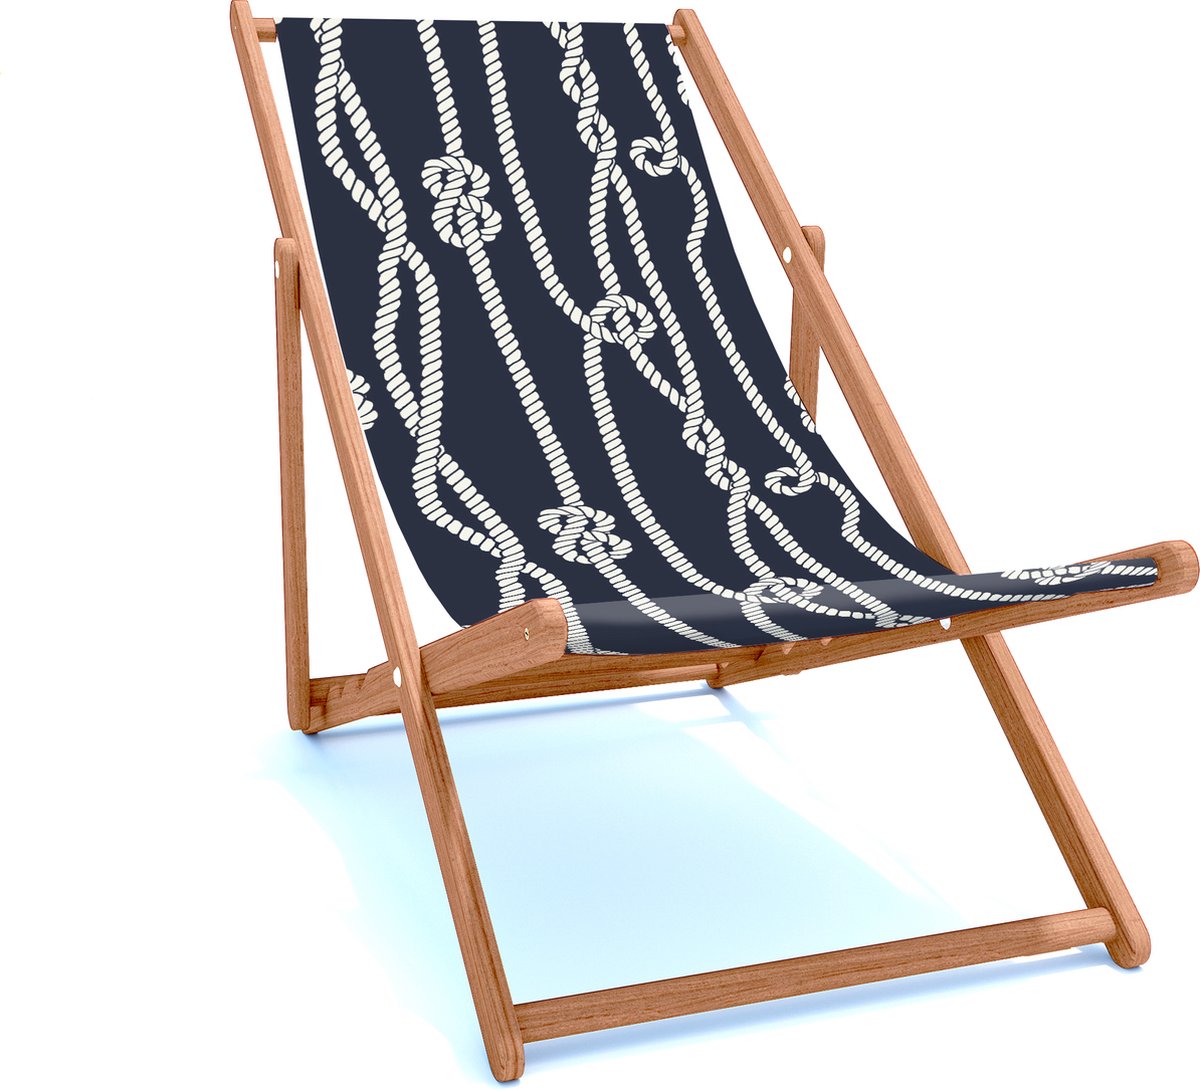 Holtaz Strandstoel Hout Inklapbaar Comfortabele Zonnebed Ligbed met verstelbare Lighoogte houten frame met stoffen Marine